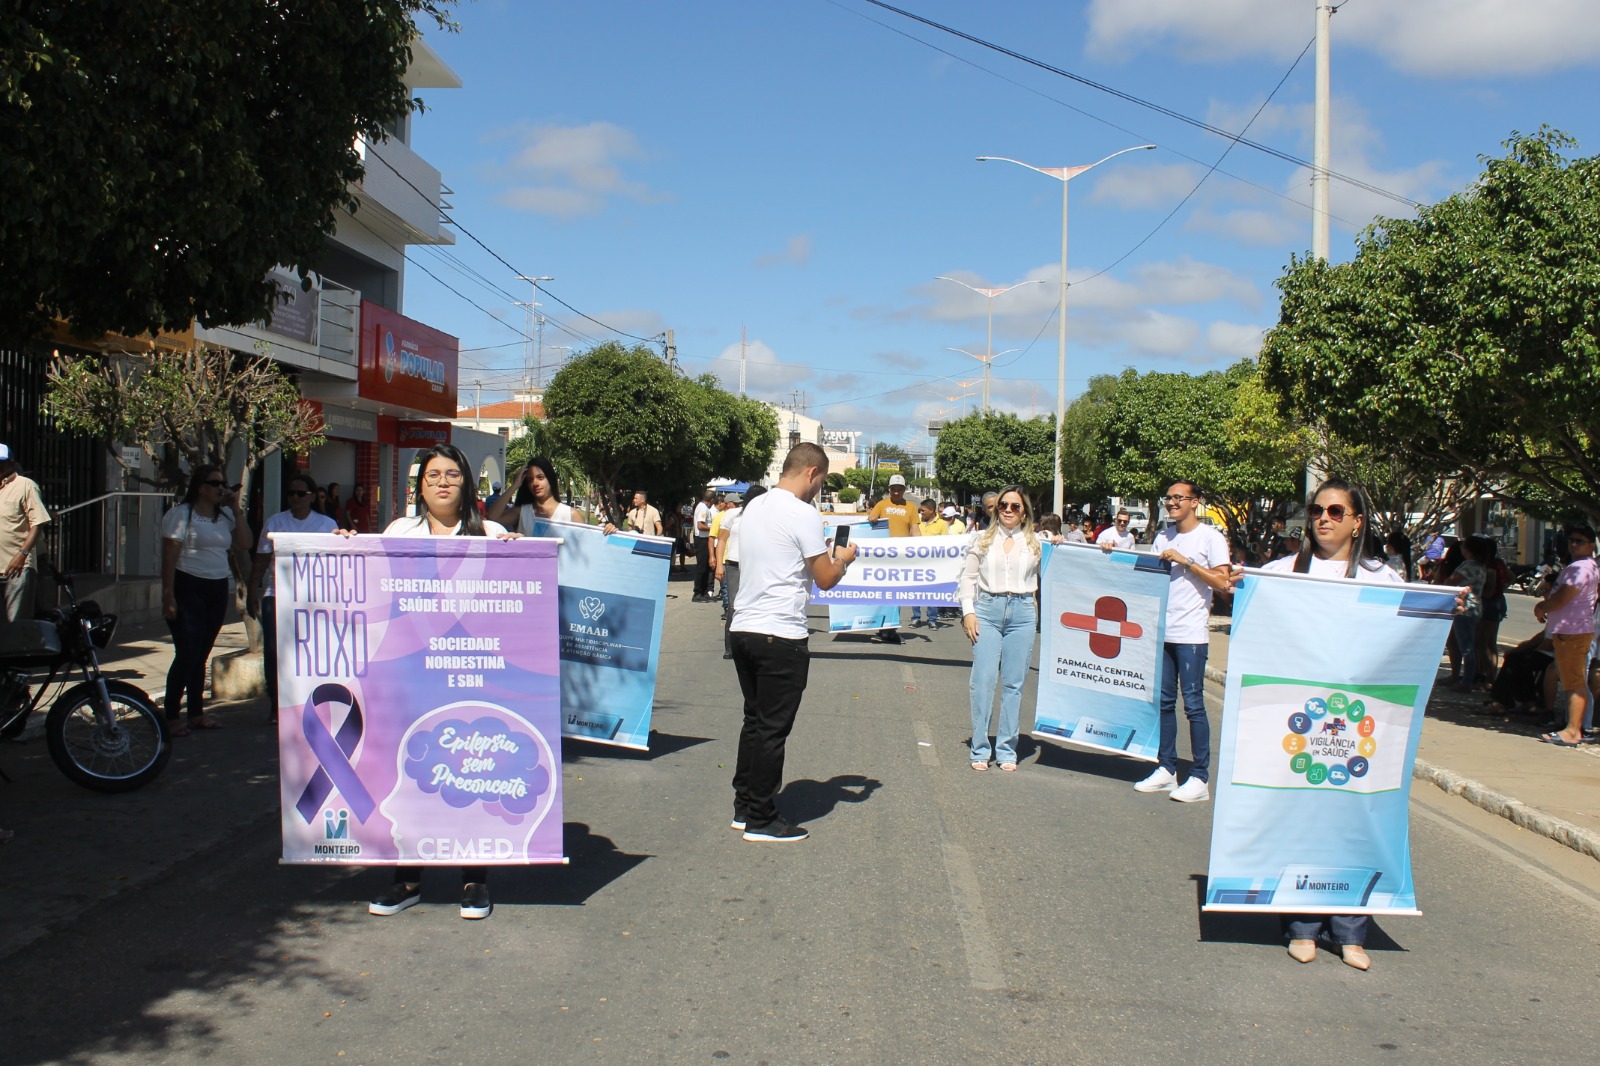 Desfiles-Civicos-em-Monteiro-acontecem-com-grande-presenca-de-publico-e-autoridades-39 Desfiles Cívicos em Monteiro acontecem com grande presença de público e autoridades